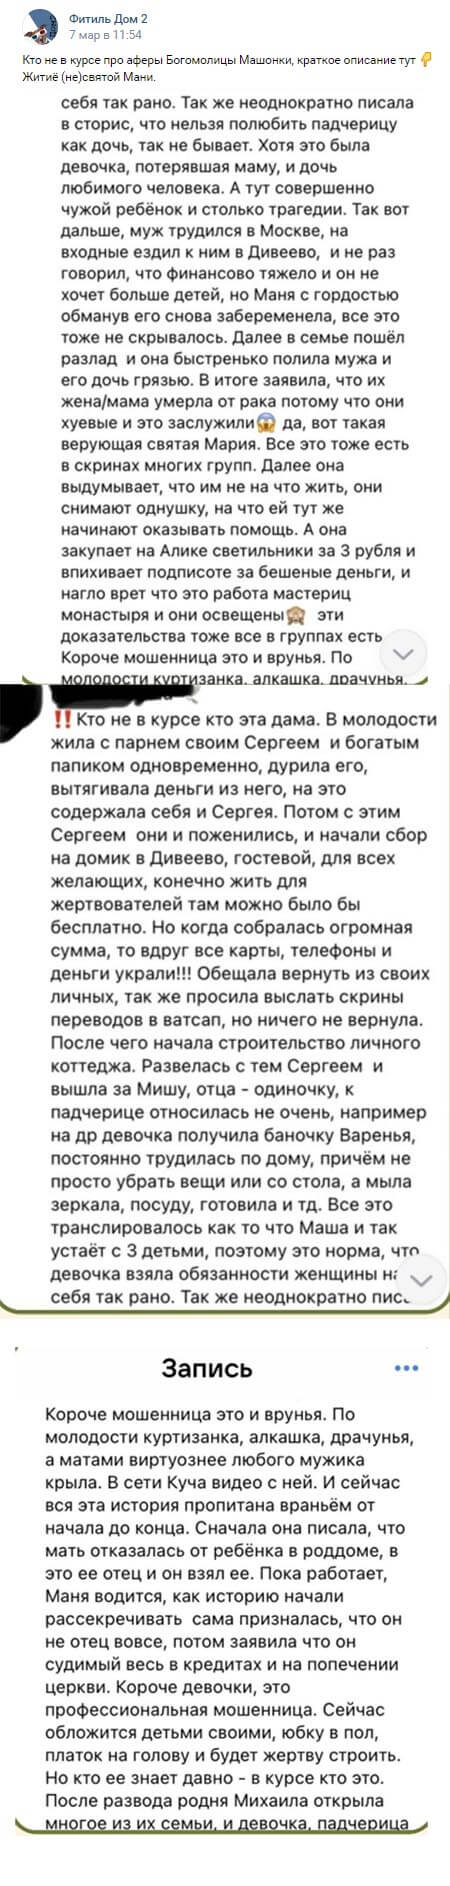 Новость про Марию Круглыхину вконтакте 